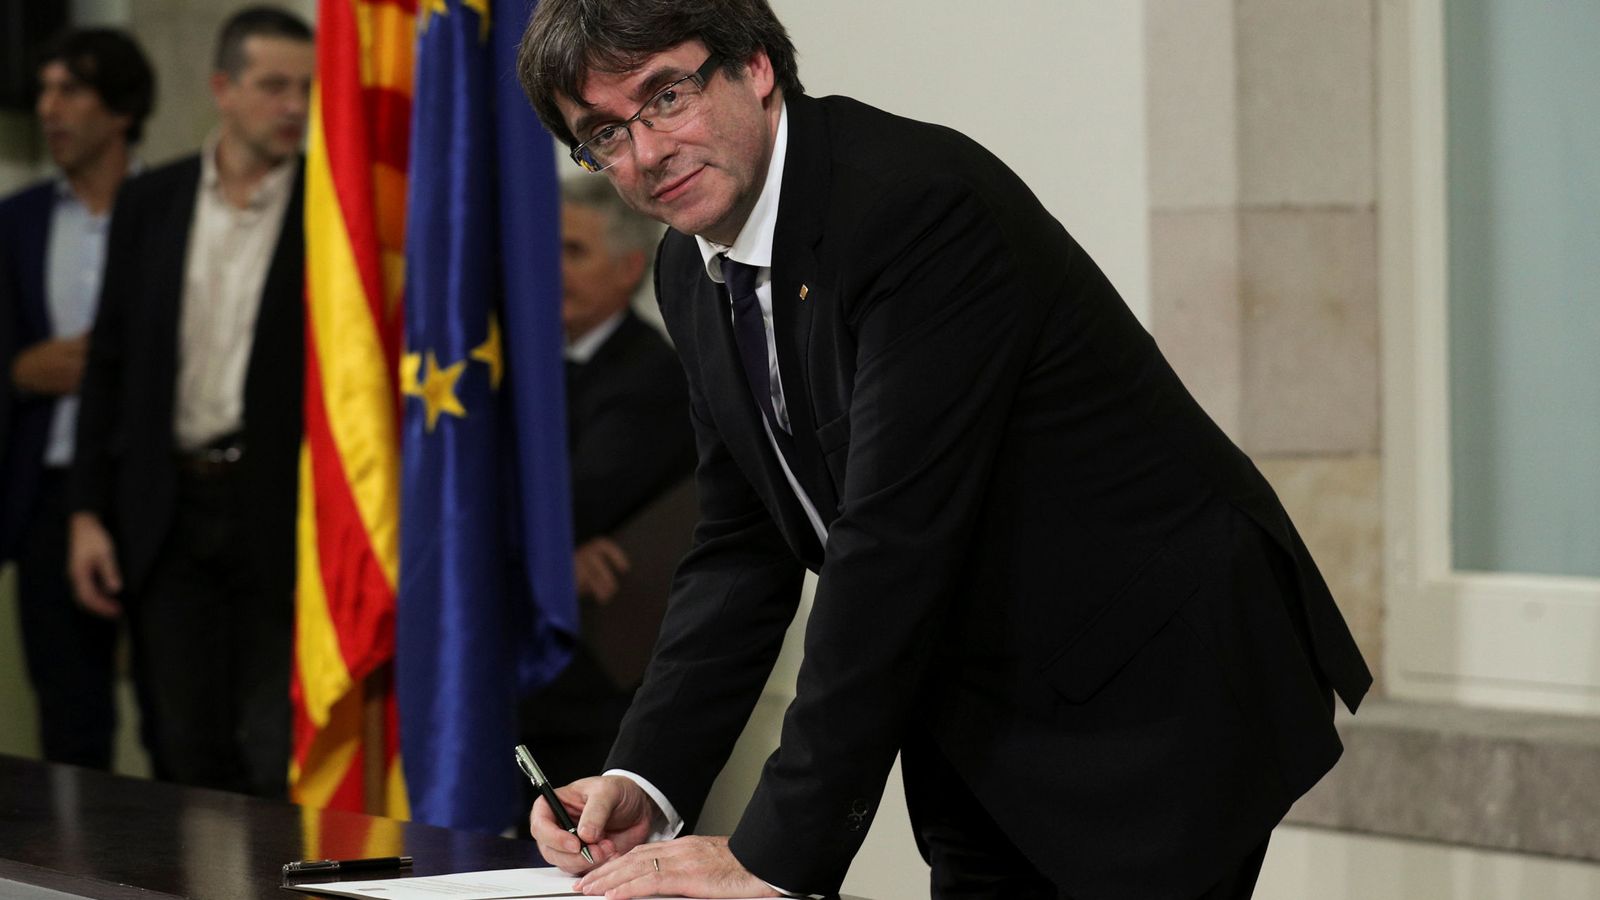 Foto: El presidente de la Generalitat, Carles Puigdemont, firma la declaración de independencia después de comparecer ante el pleno del Parlament. (Reuters)